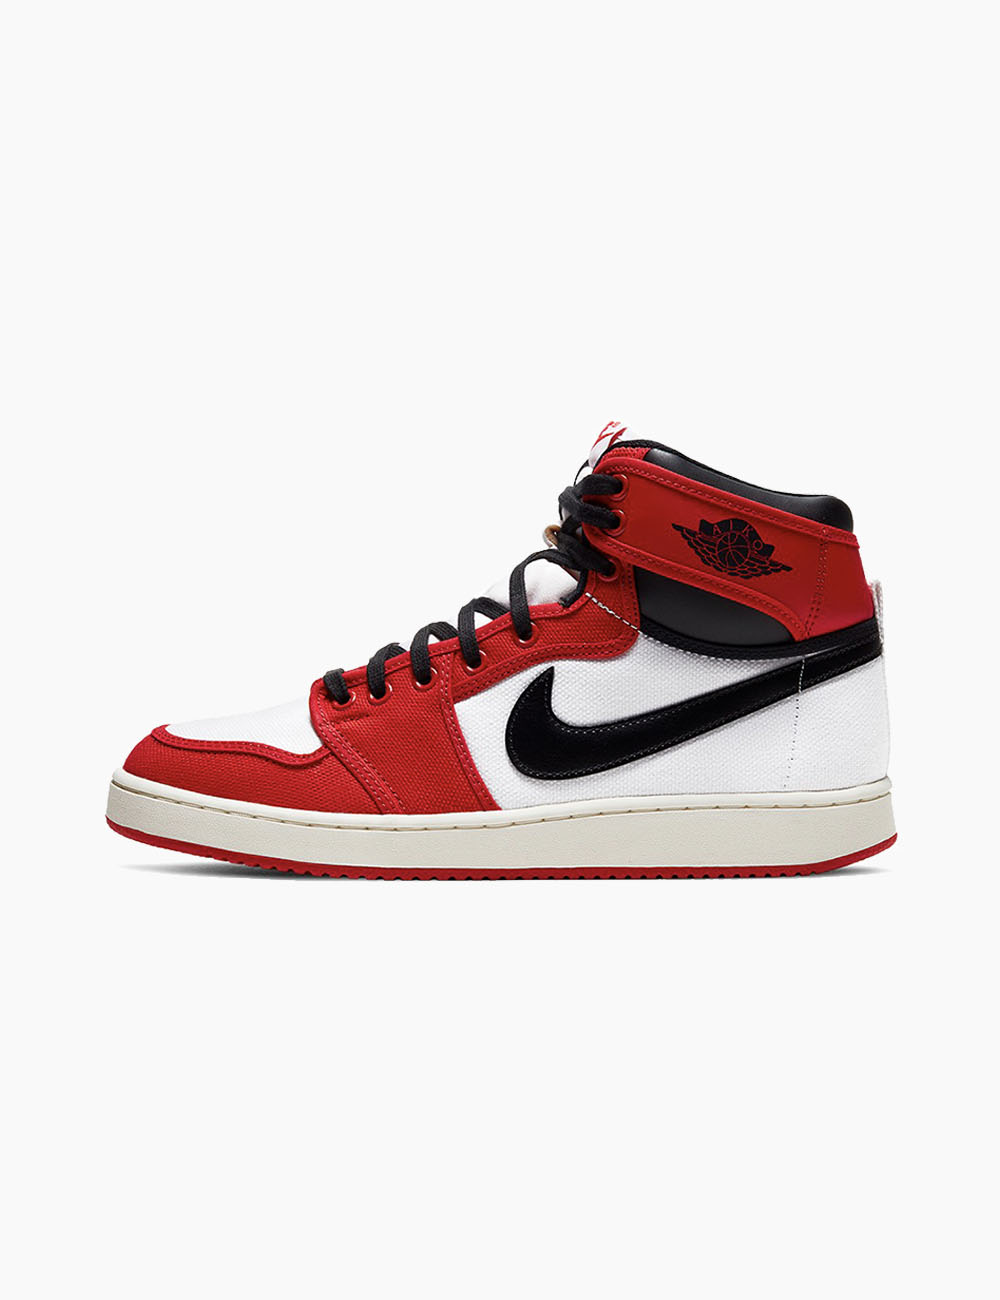 Sneaker - Air Jordan 1 KO Retro “Chicago” - Diabolical Rabbit